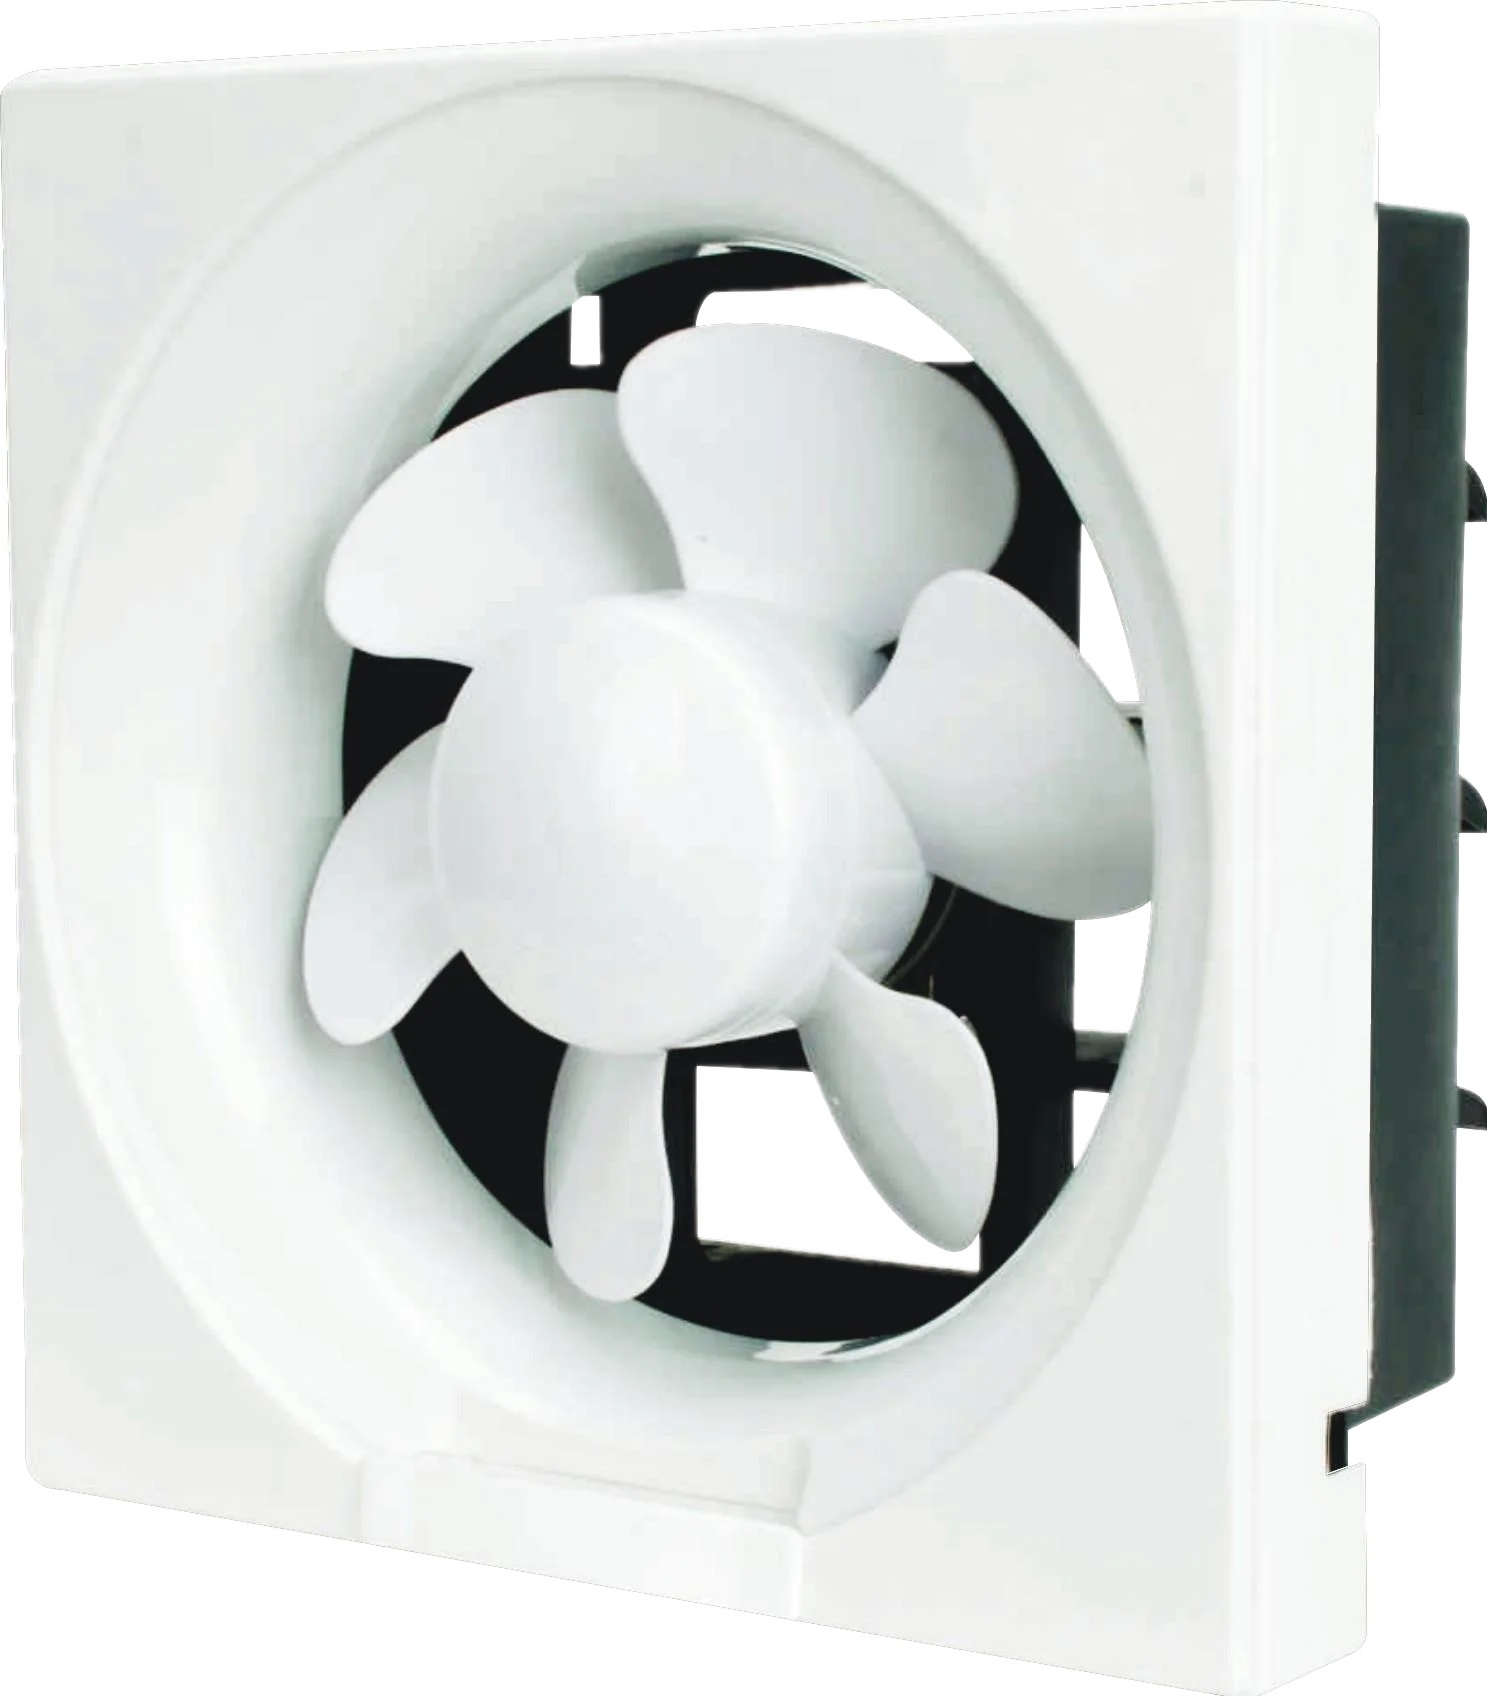 Kdk Square Exhaust Fan Ventilation Fan Of 6 Blades - Buy Industrial